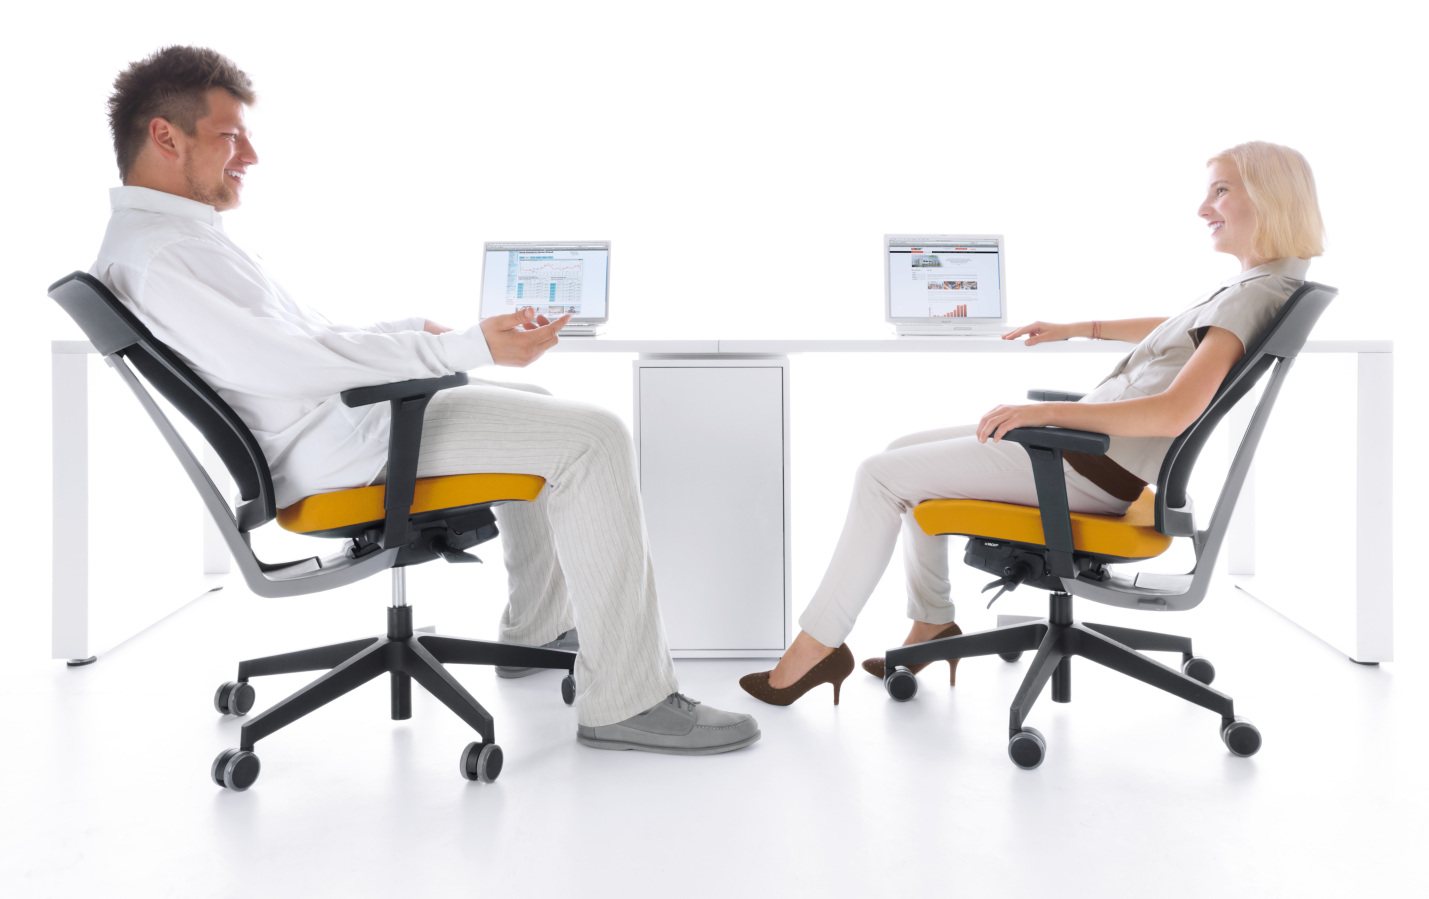 XenonNet kolekcja pracowniczych krzeseł obrotowych i krzeseł konferencyjnych. Producent: Profim Dystrybutor: Vipservice